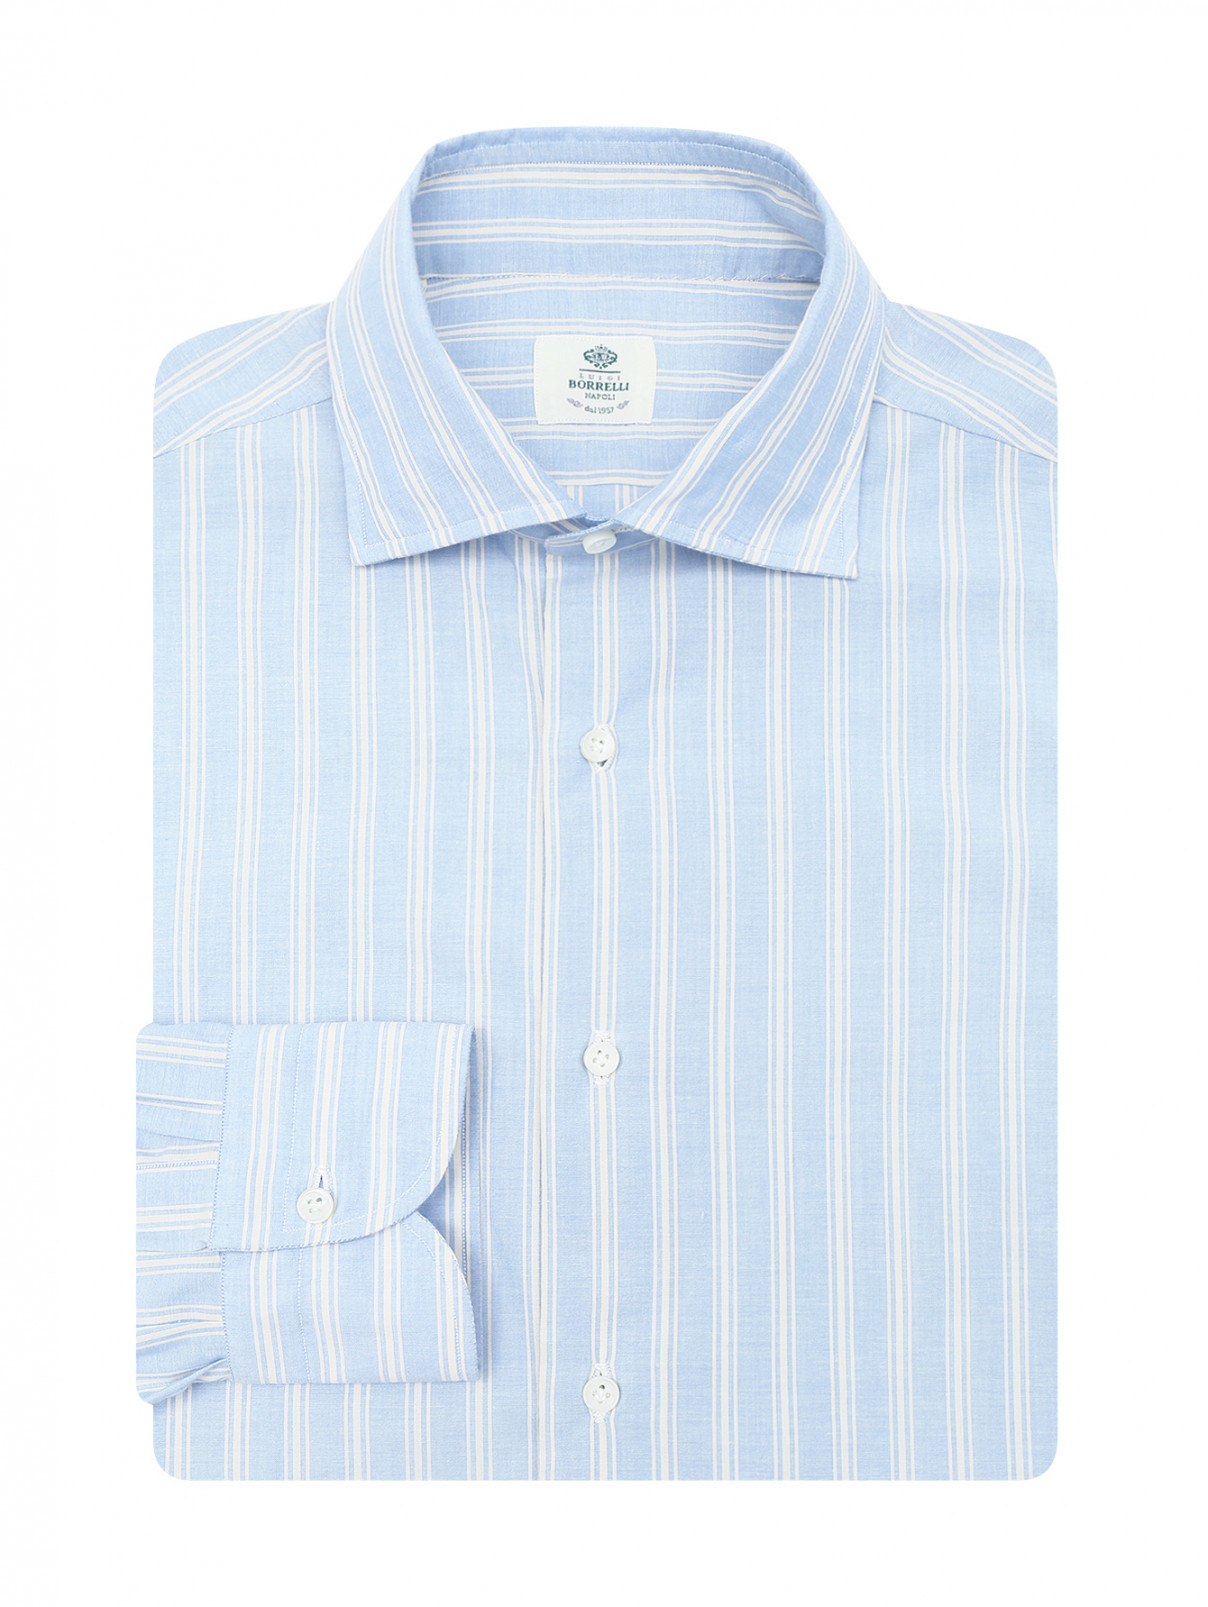 Рубашка из хлопка с узором полоска Borrelli  –  Общий вид  – Цвет:  Синий